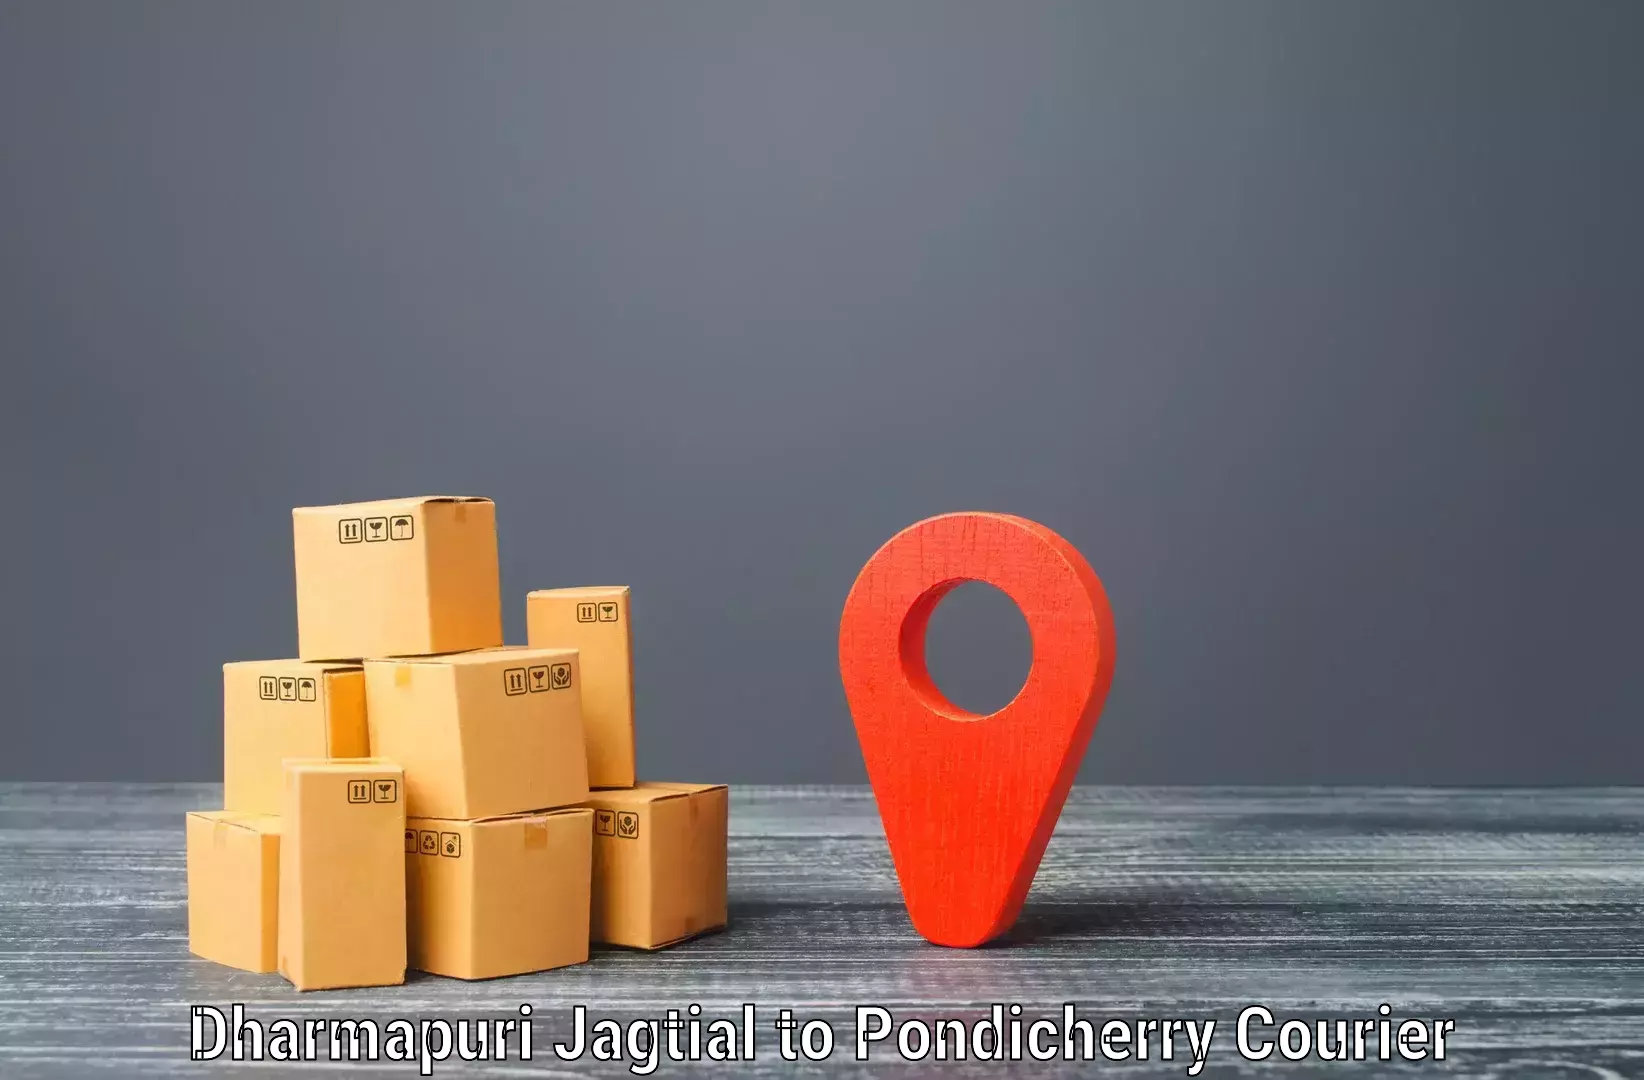 User-friendly delivery service in Dharmapuri Jagtial to Karaikal